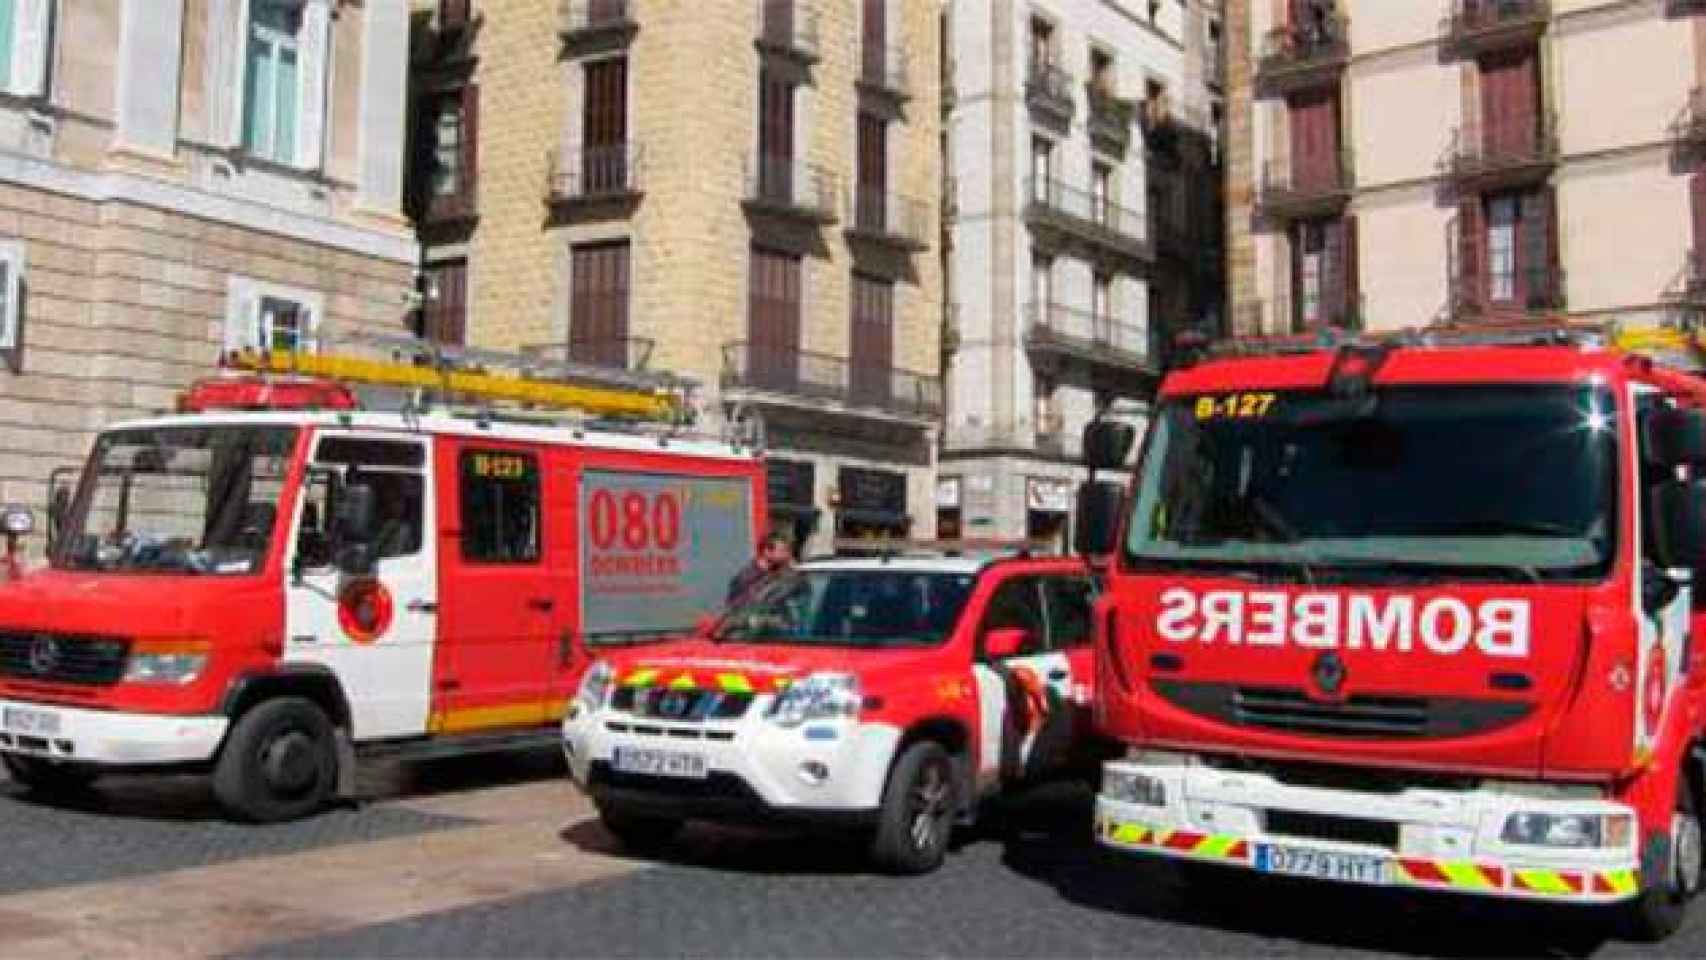 Vehículos utilizados por los Bomberos de Barcelona, imagen de archivo